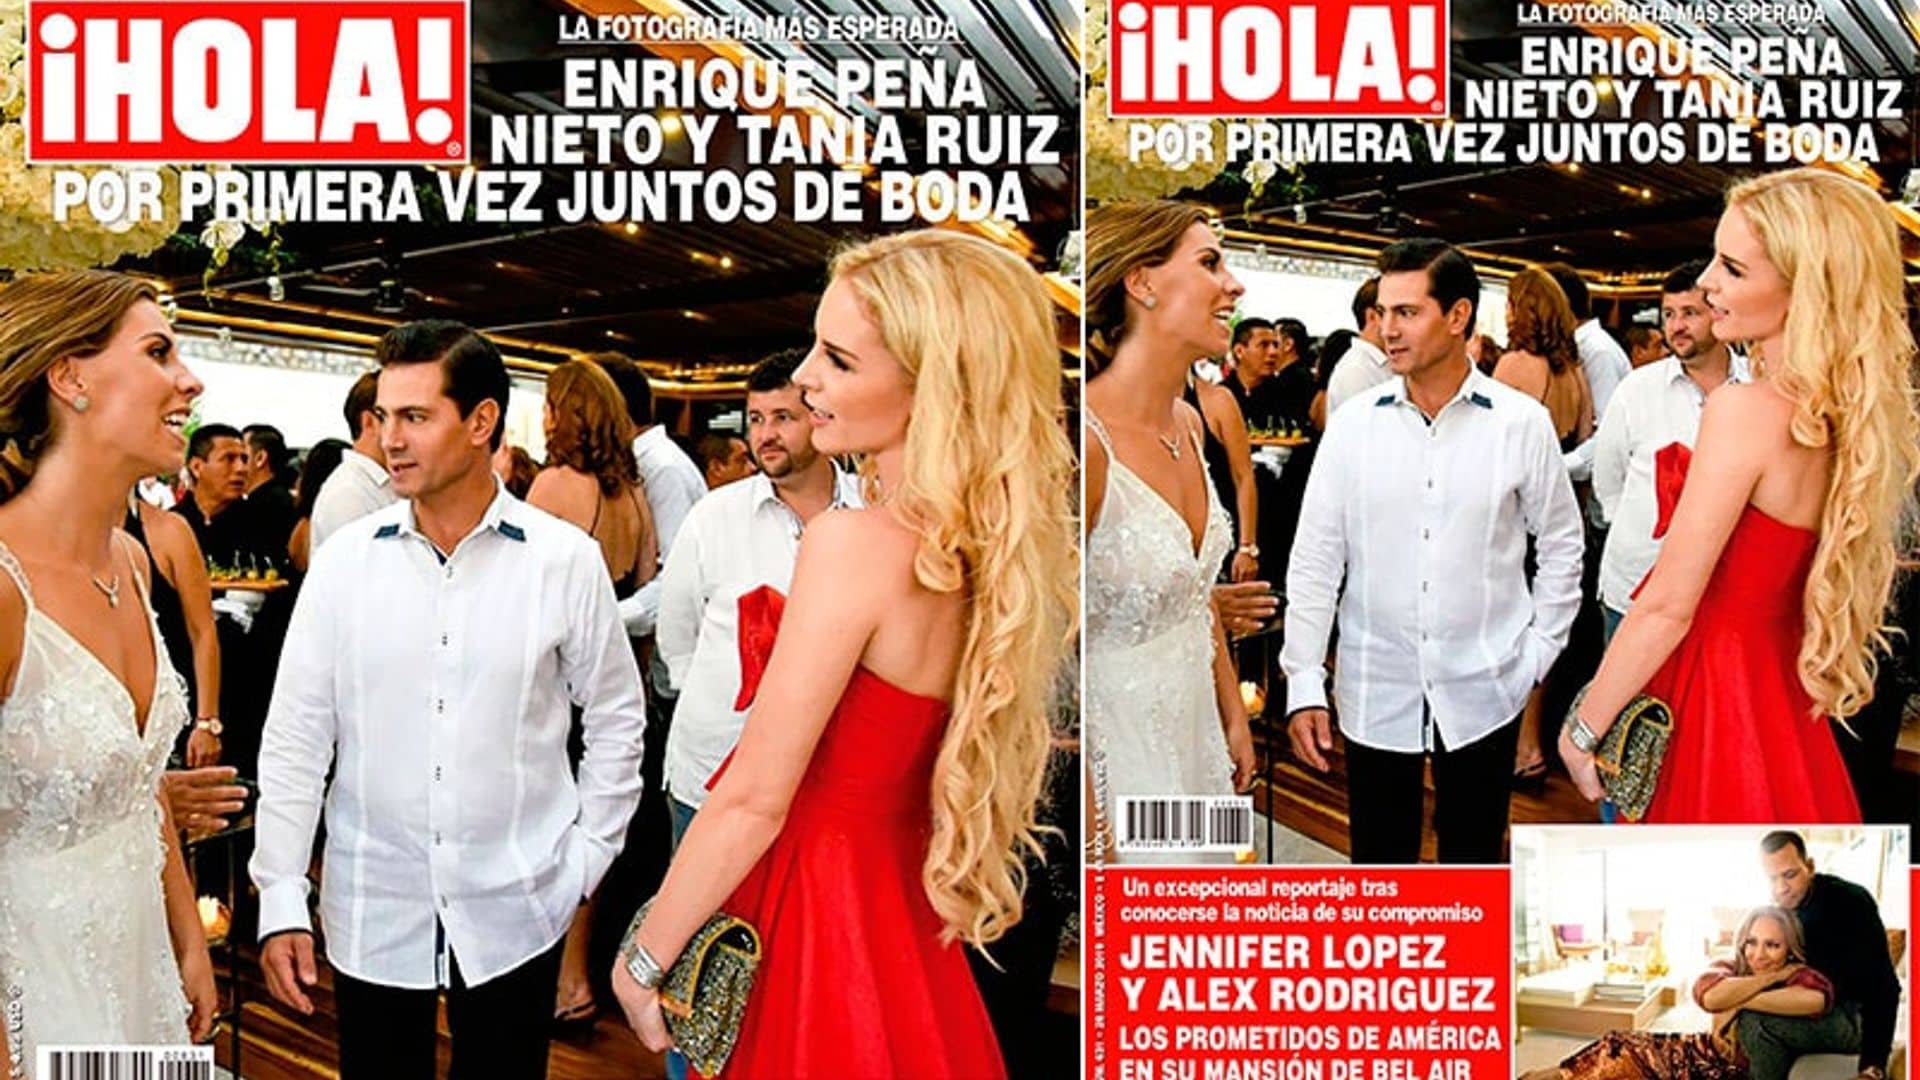 En ¡HOLA!, Enrique Peña Nieto y Tania Ruiz por primera vez juntos de boda